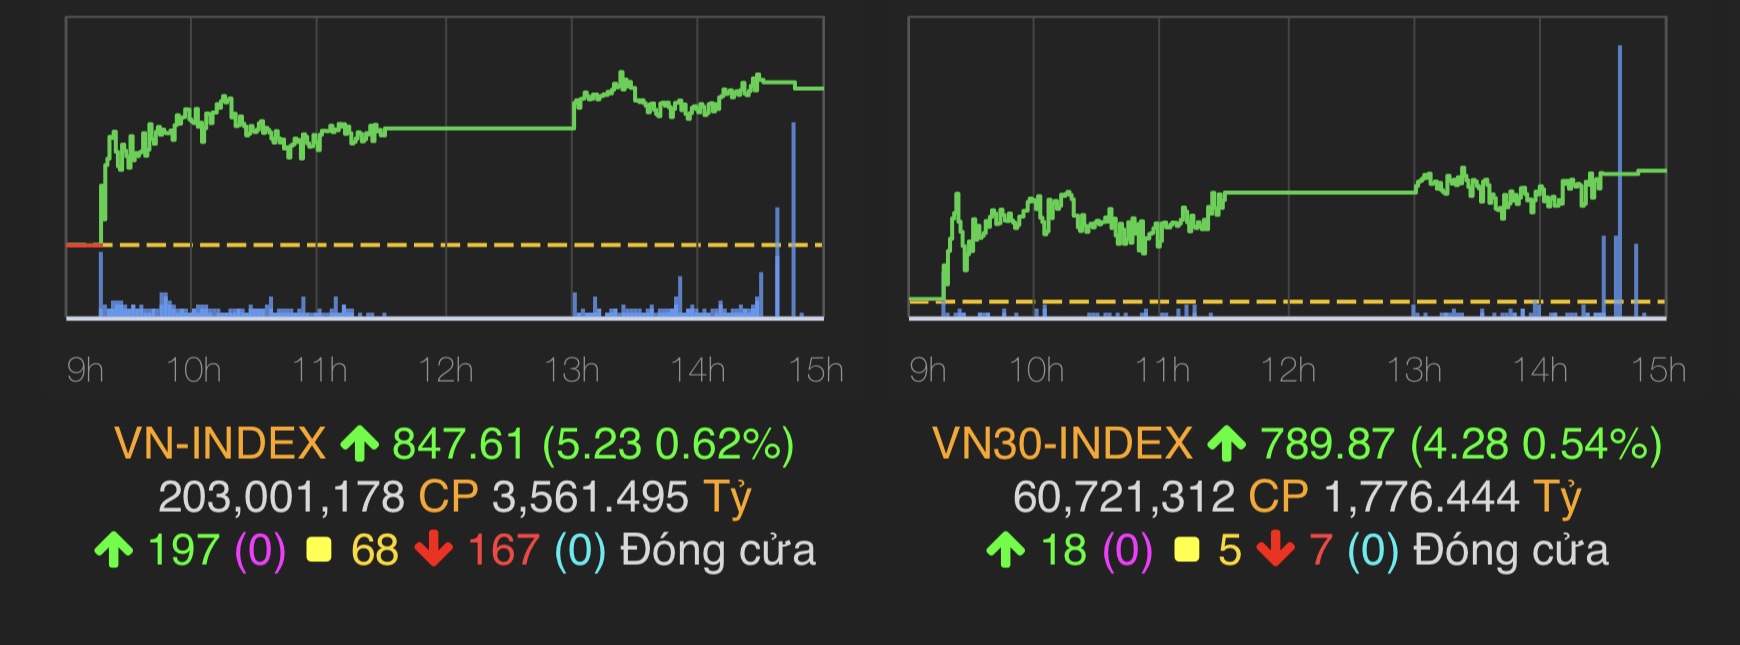 VN-Index tăng 5,23 điểm (0,62%) lên 847,61 điểm